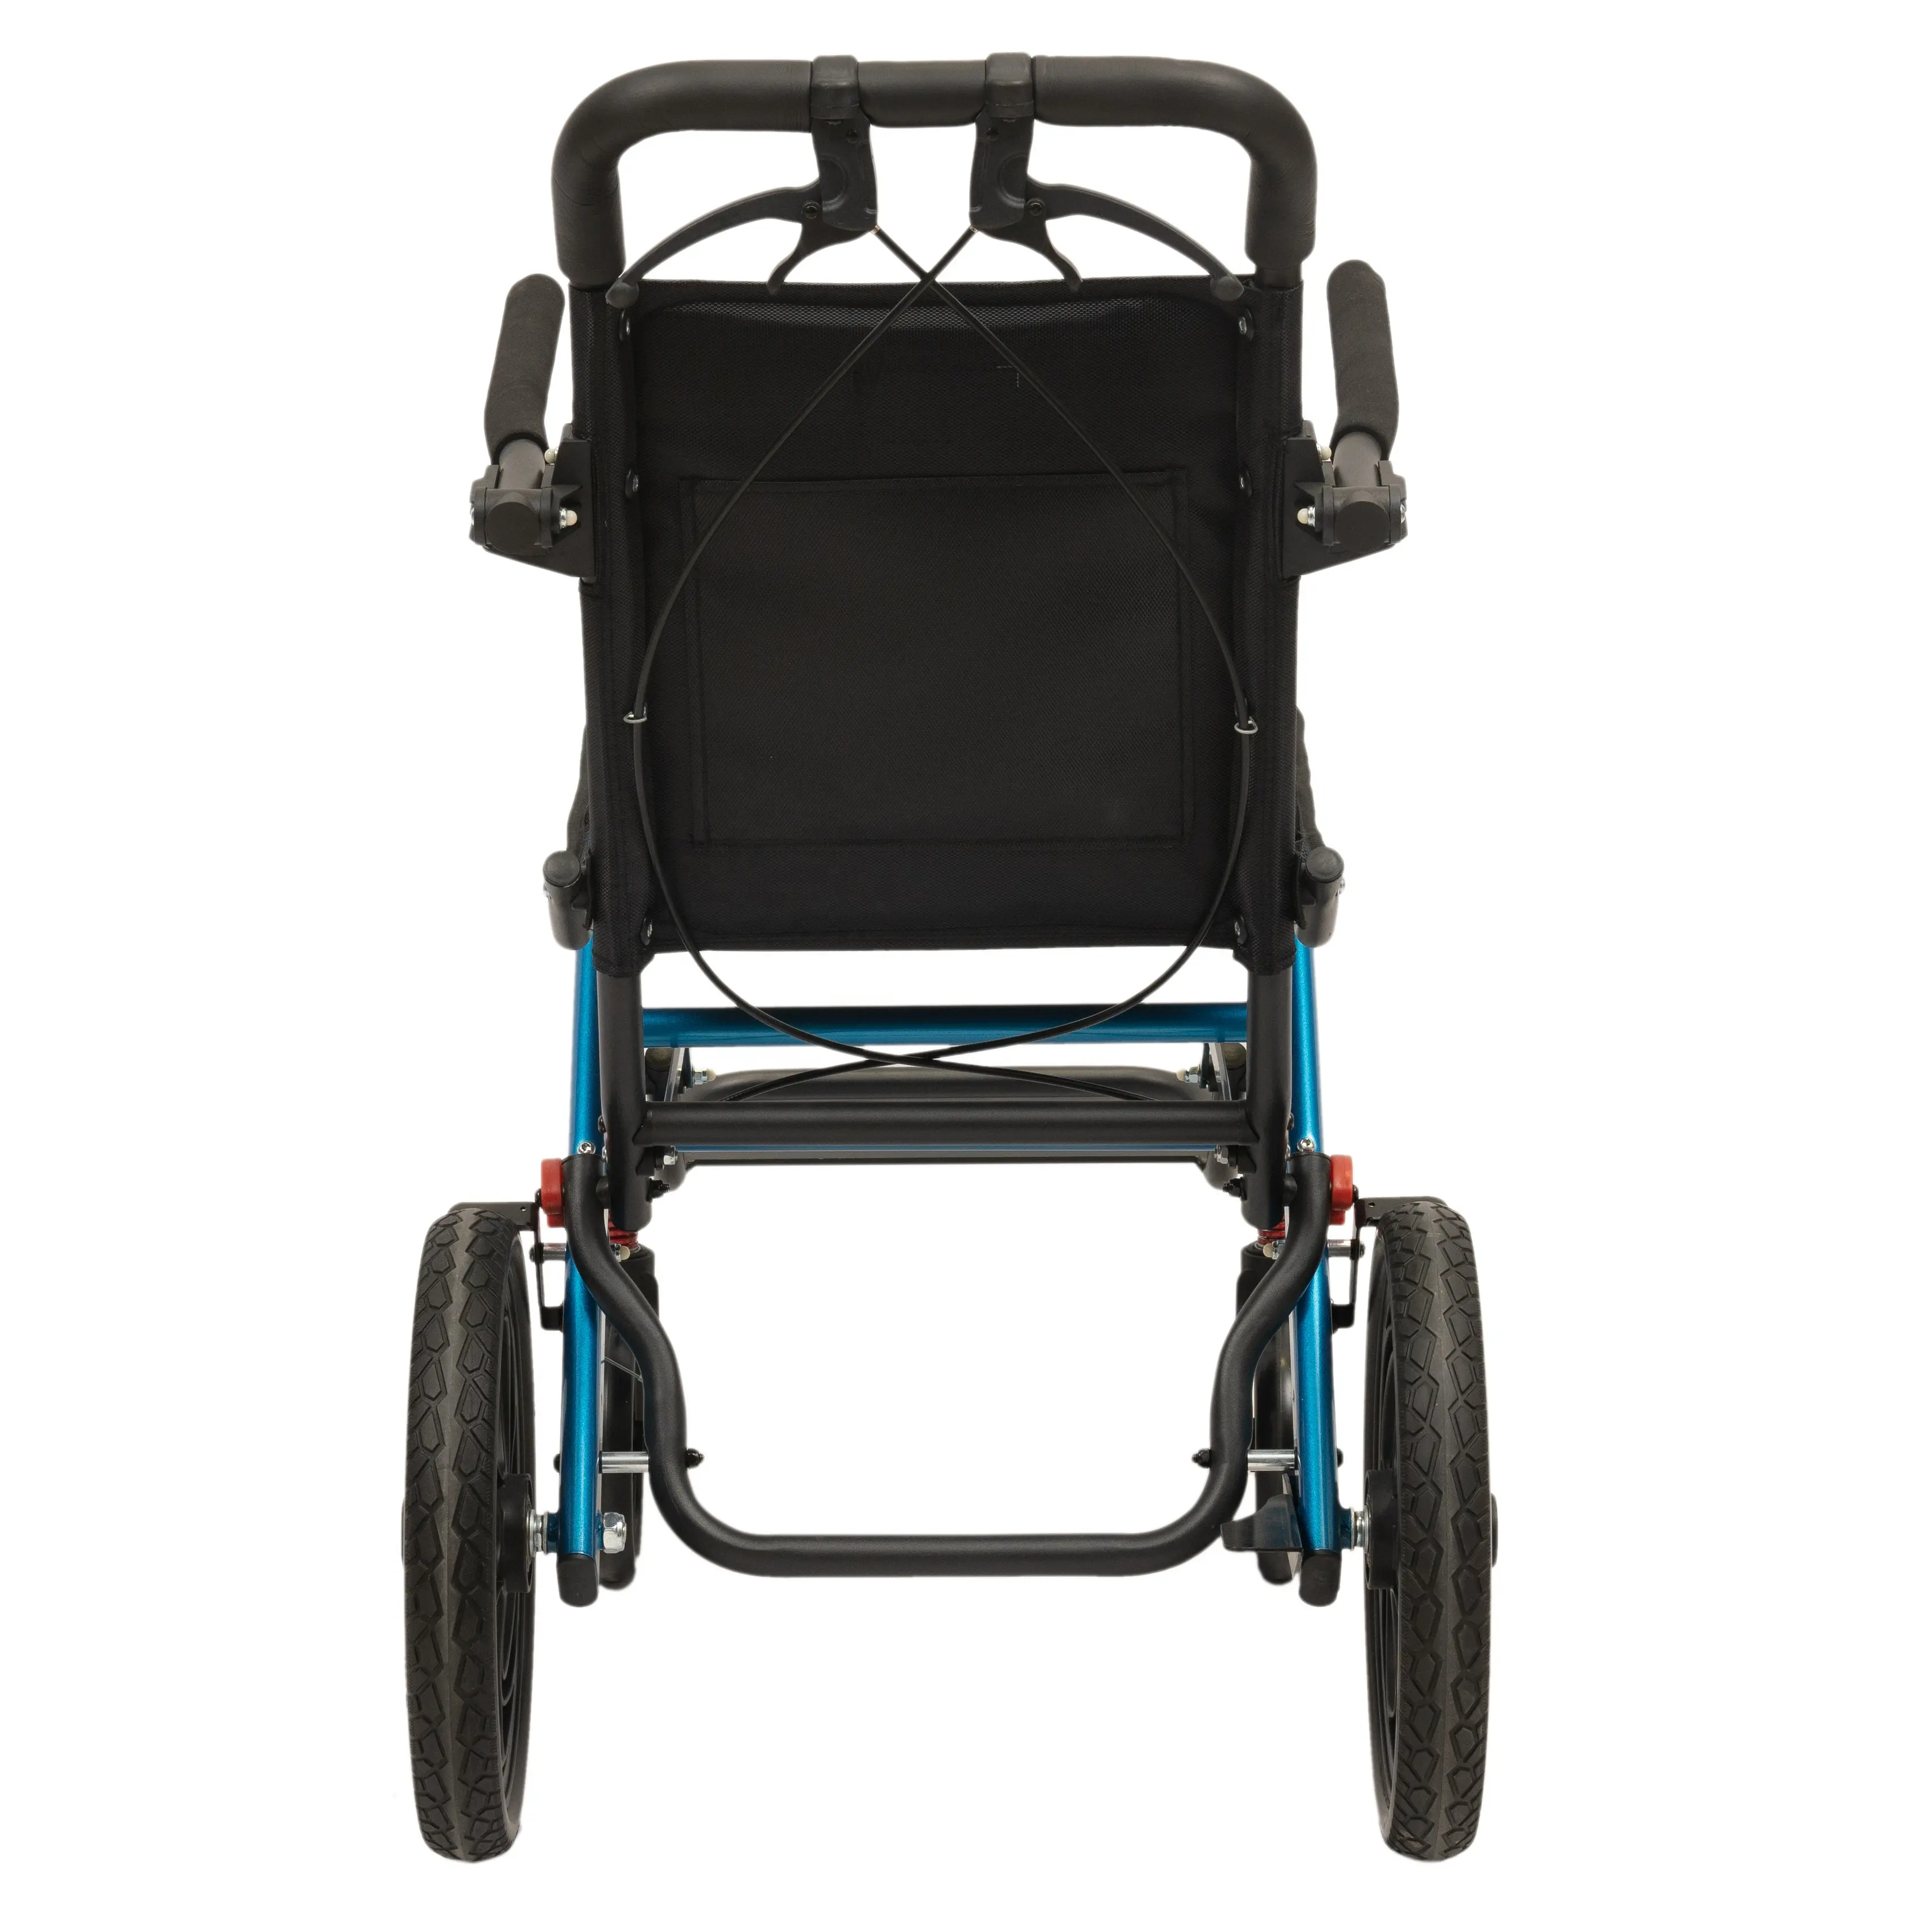 Hafif taşınabilir tekerlekli sandalyeler katlanır kendinden kilitlemeli fren manuel tekerlekli sandalye çocuklar açık kullanım için